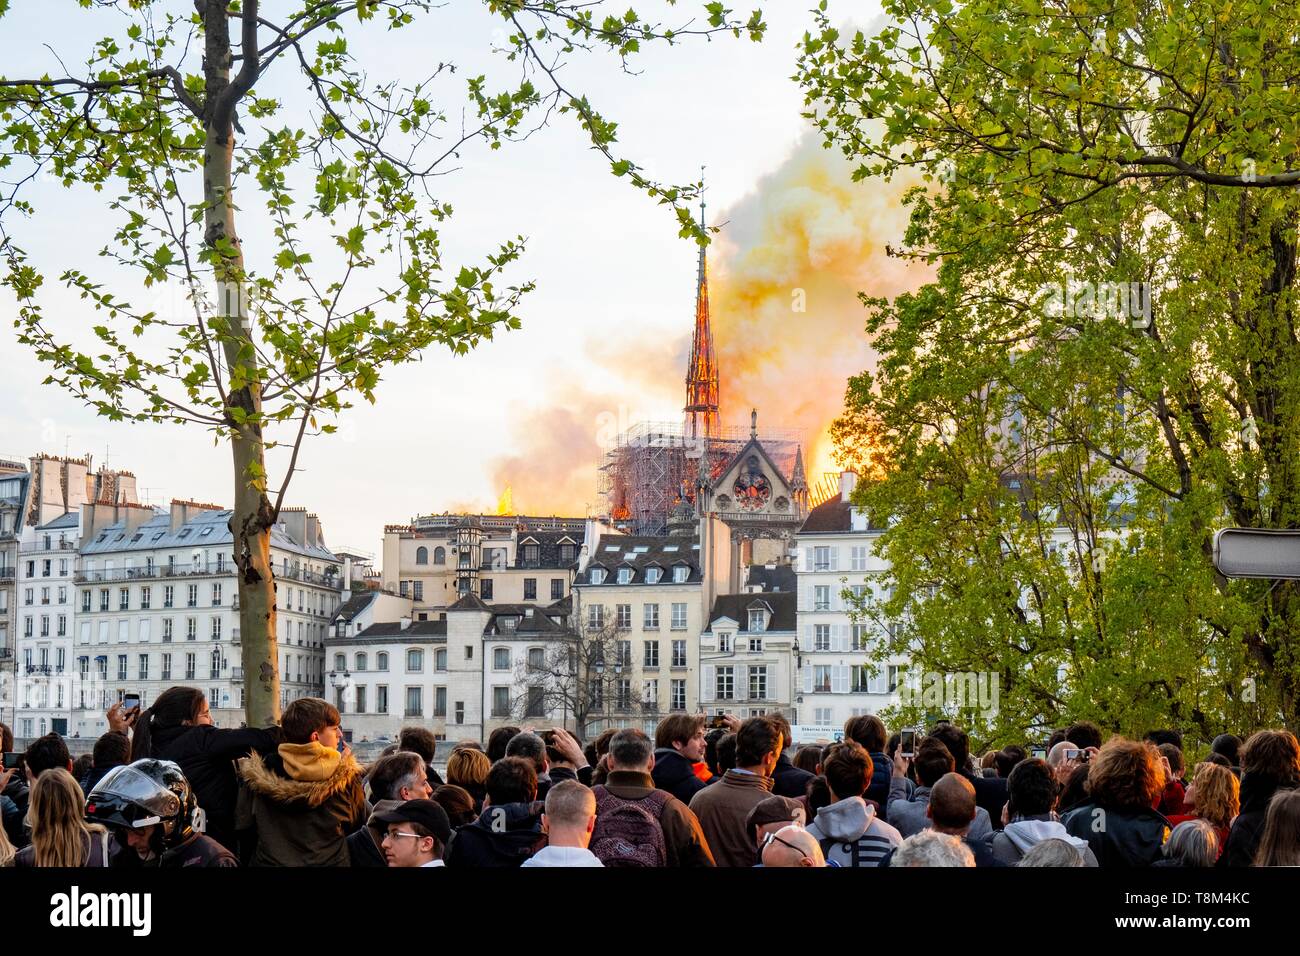 Frankreich, Paris, Bereich als Weltkulturerbe von der UNESCO, der Ile de la Cité, Kathedrale Notre-Dame, das grosse Feuer, dass die Kathedrale am 15. April 2019 verwüsteten aufgeführt Stockfoto